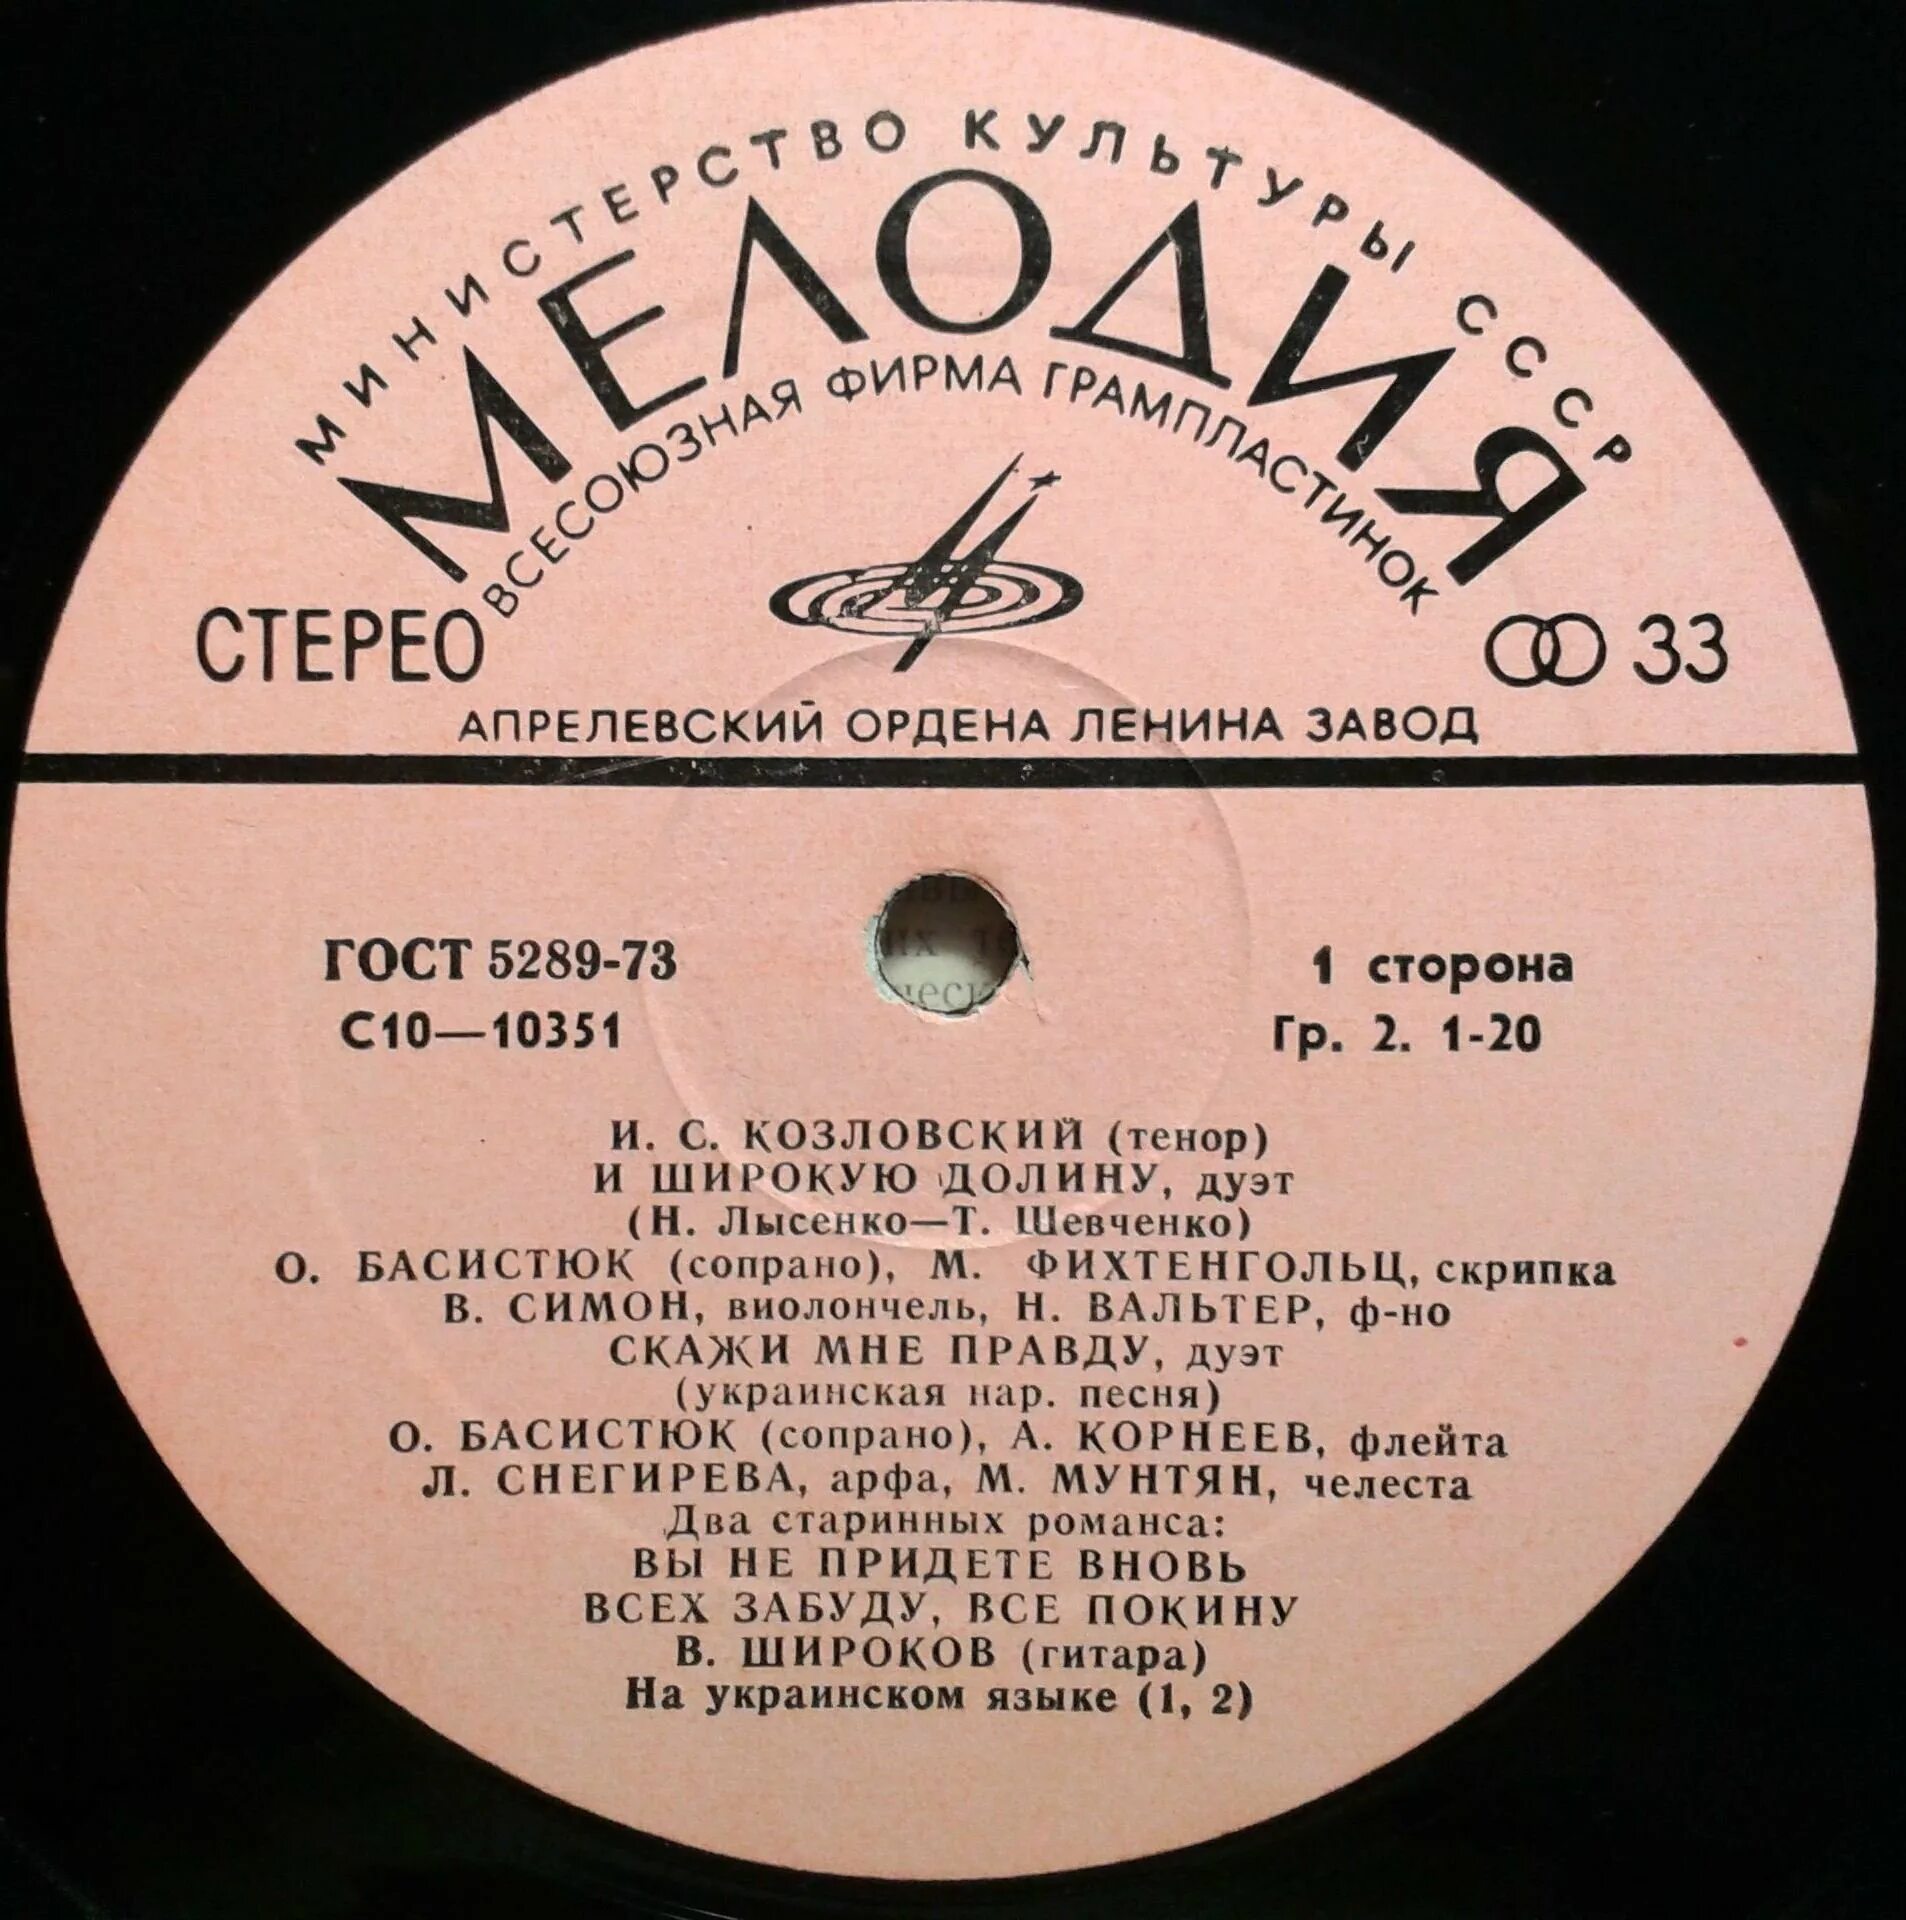 Пластинка Самоцветы 1973. Пластинки с военными песнями.